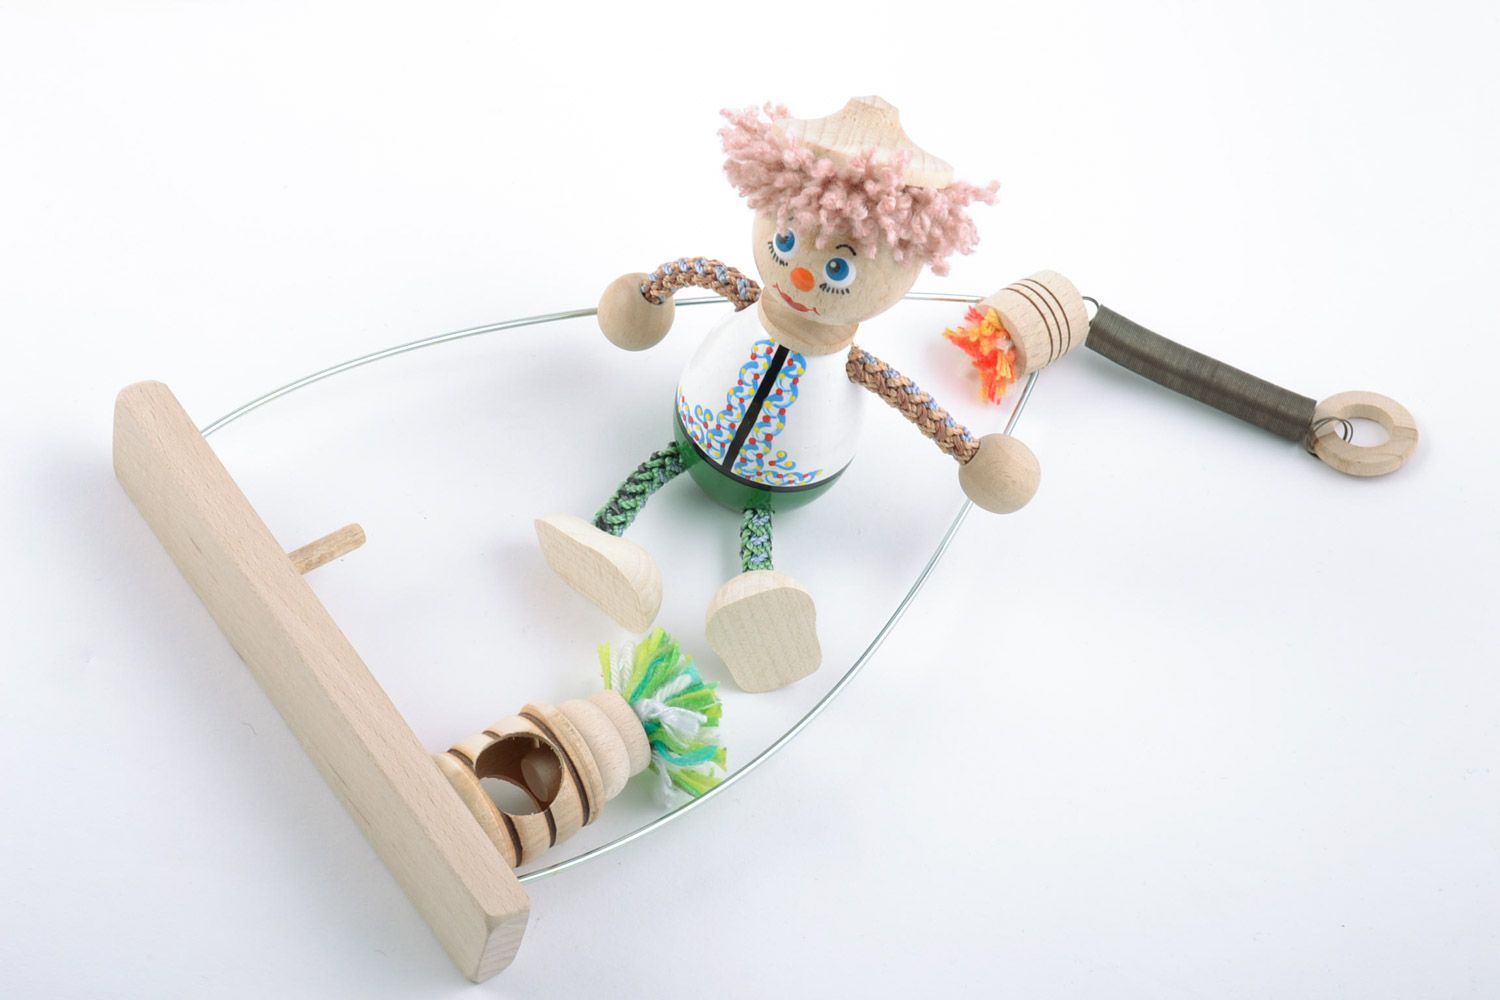 Деревянная игрушка на пружинке ручной работы расписанная эко красками для детей фото 2